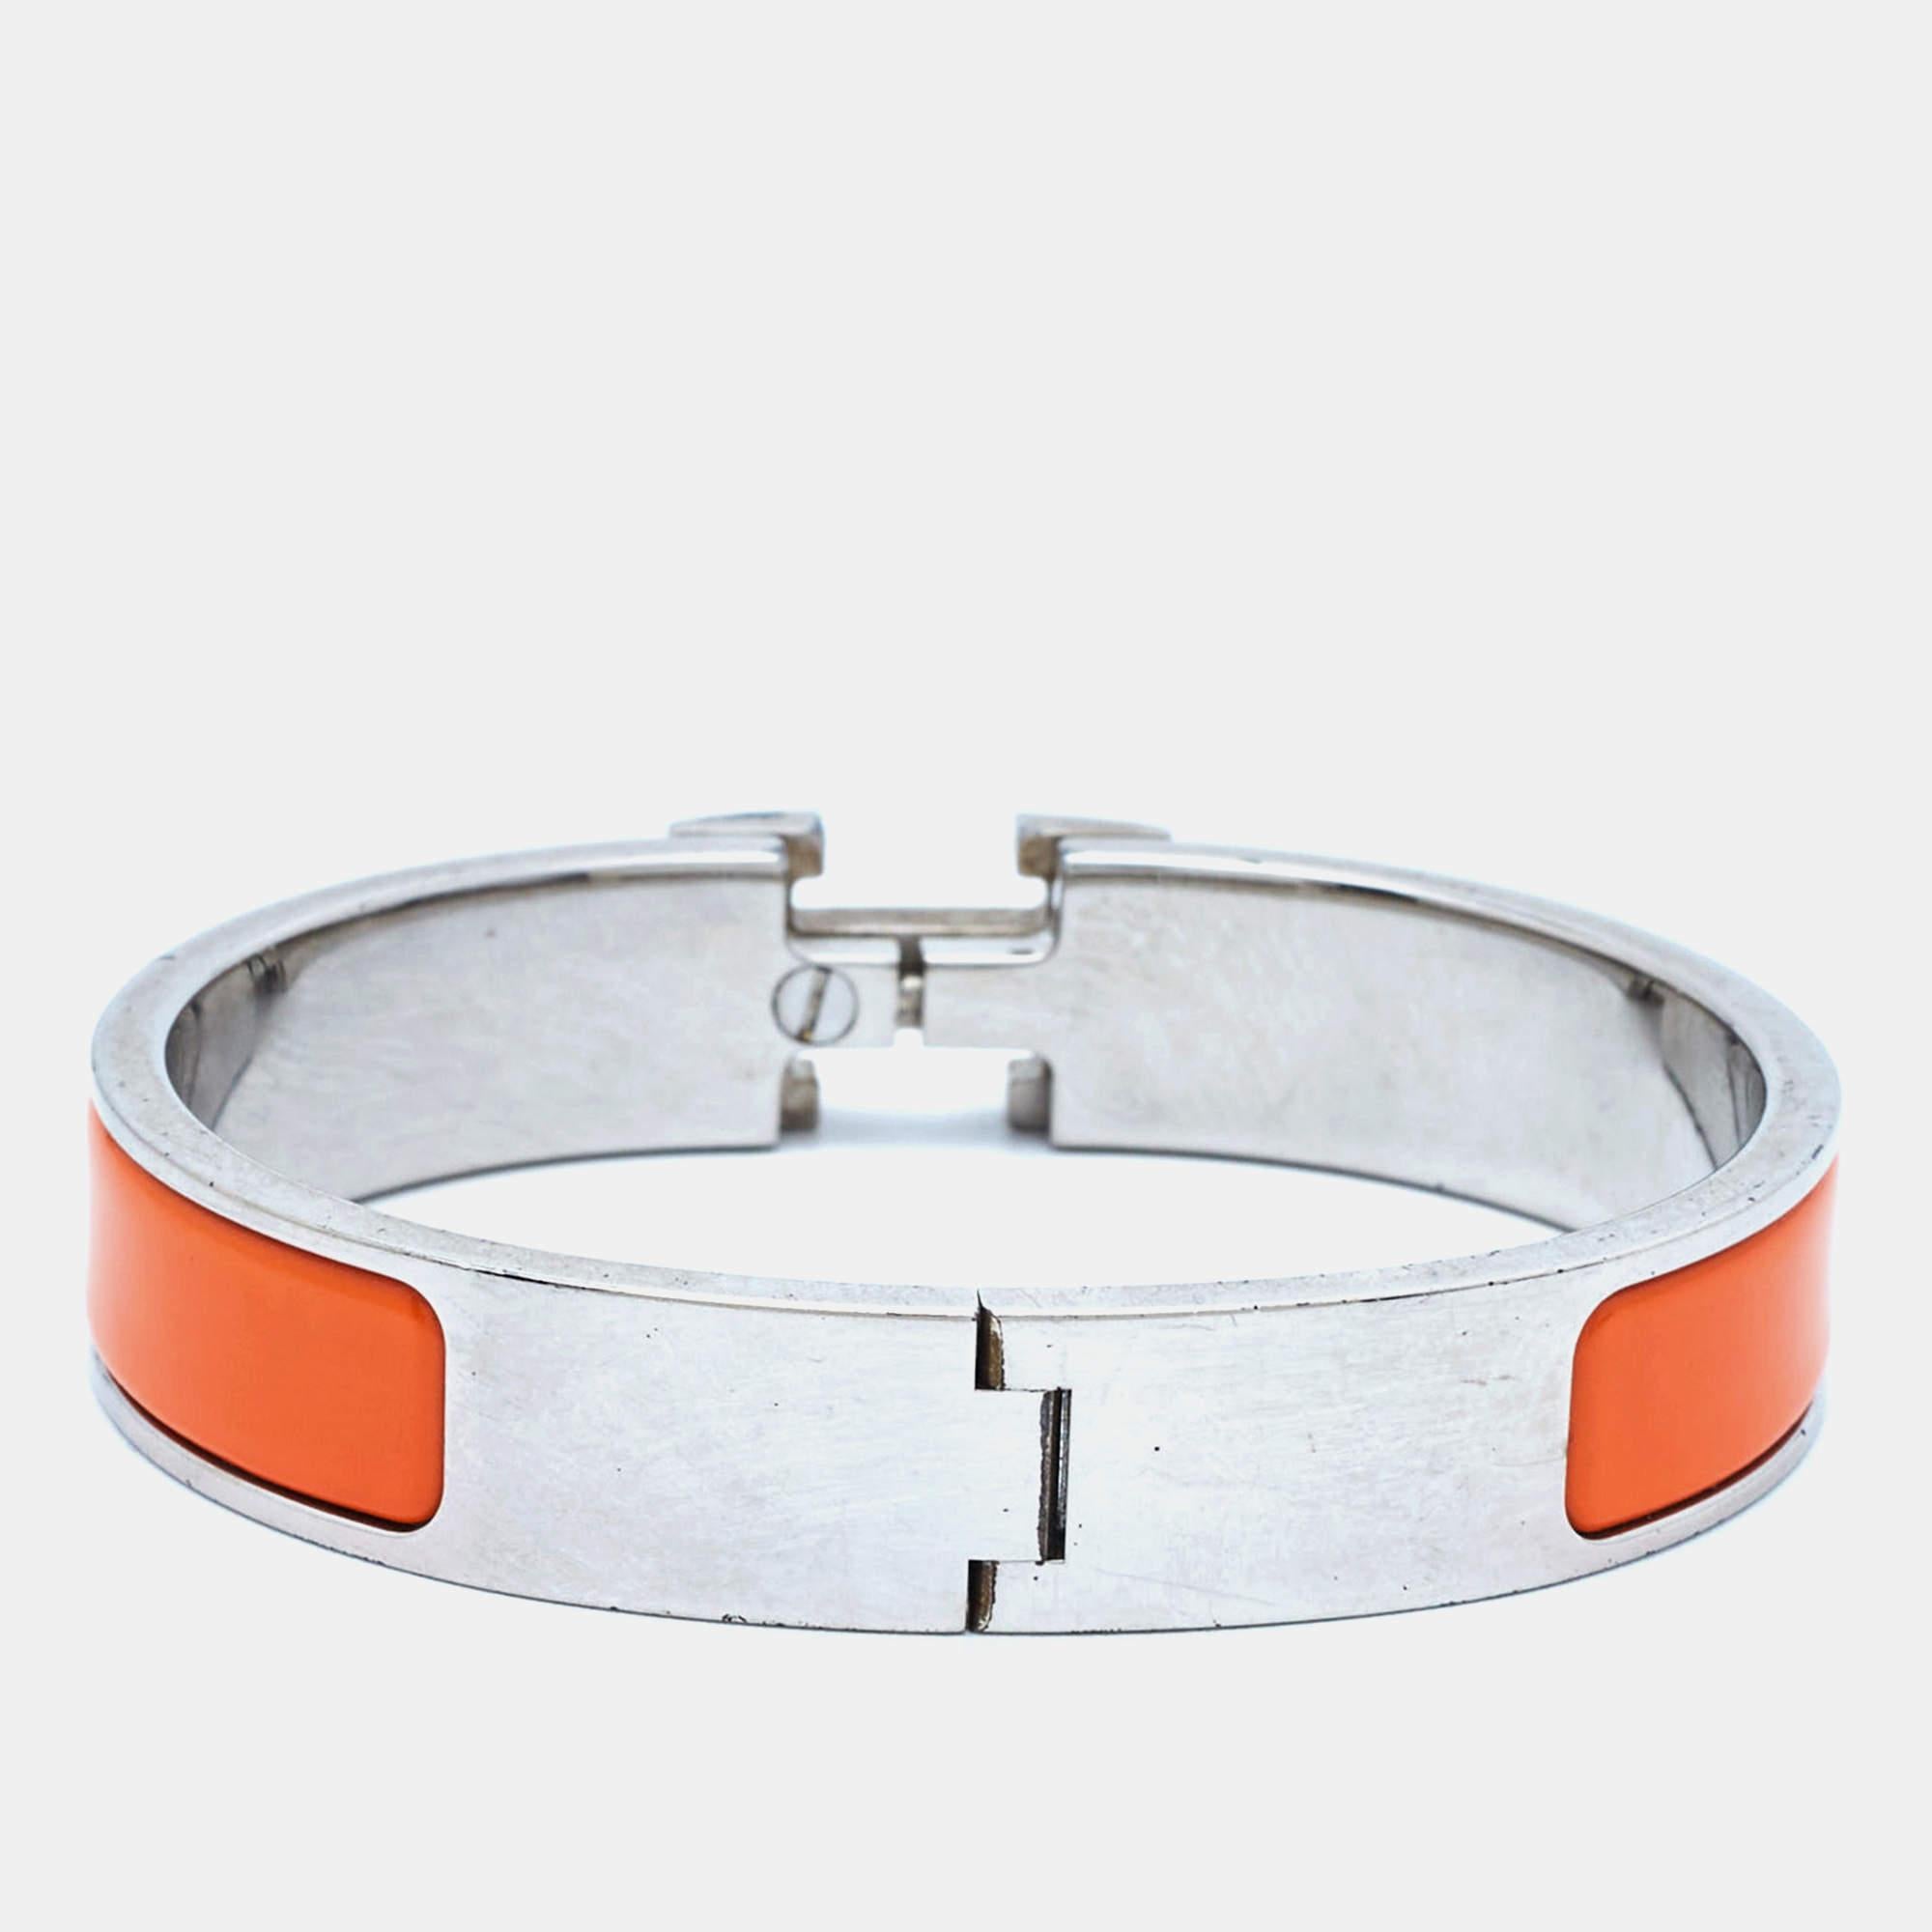 Dieses Armband von Hermes stammt aus der Kollektion Clic H. Es wurde aus palladiertem Metall gefertigt und mit Emaille gestaltet. Dieses Armband ist komplett mit dem ikonischen H in der Mitte.

